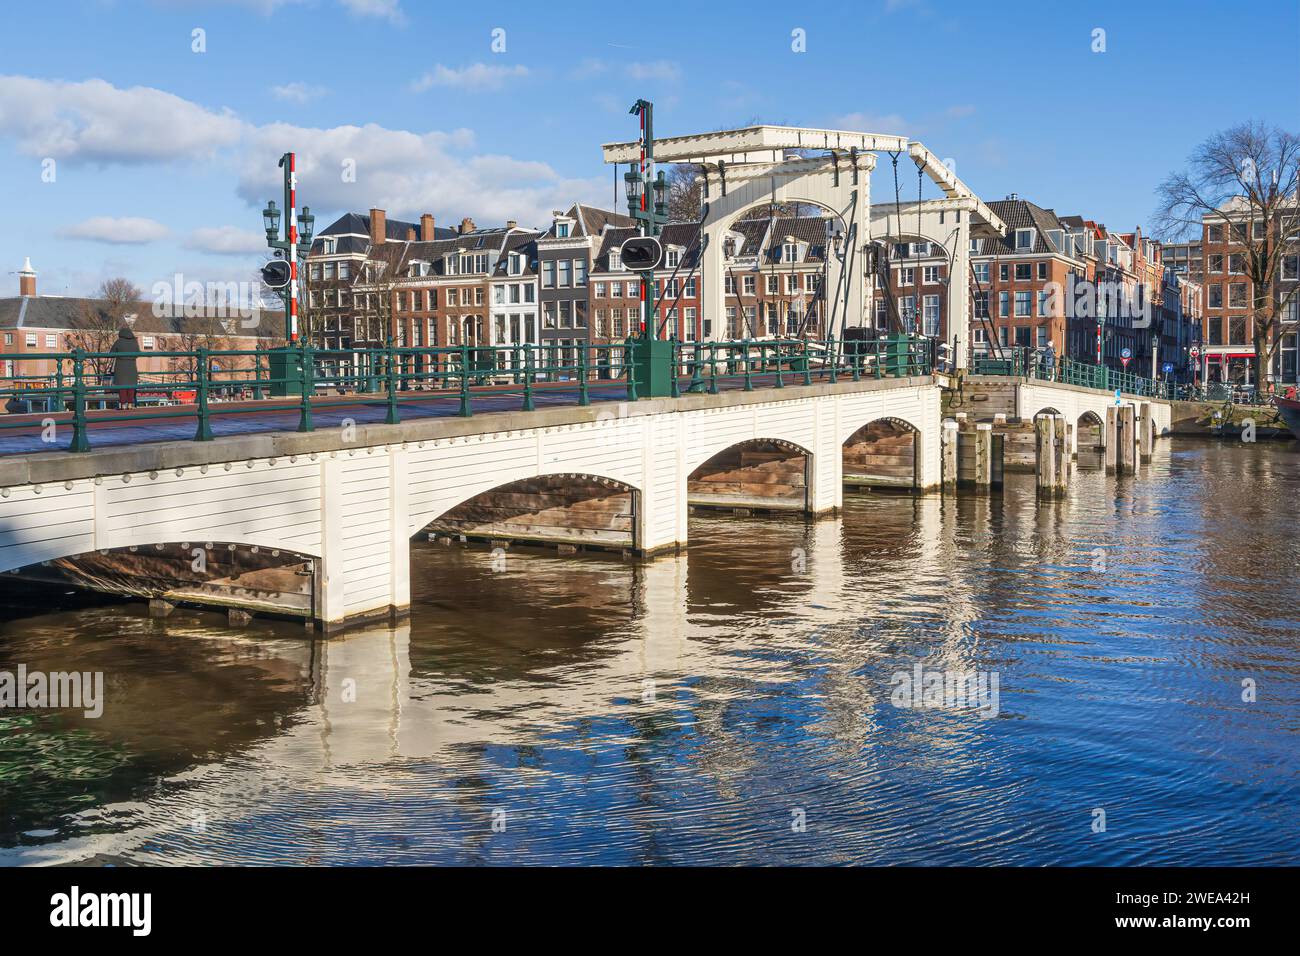 Magere Brug ou Skinny Bridge sur la rivière Amstel à Amsterdam aux pays-Bas Banque D'Images